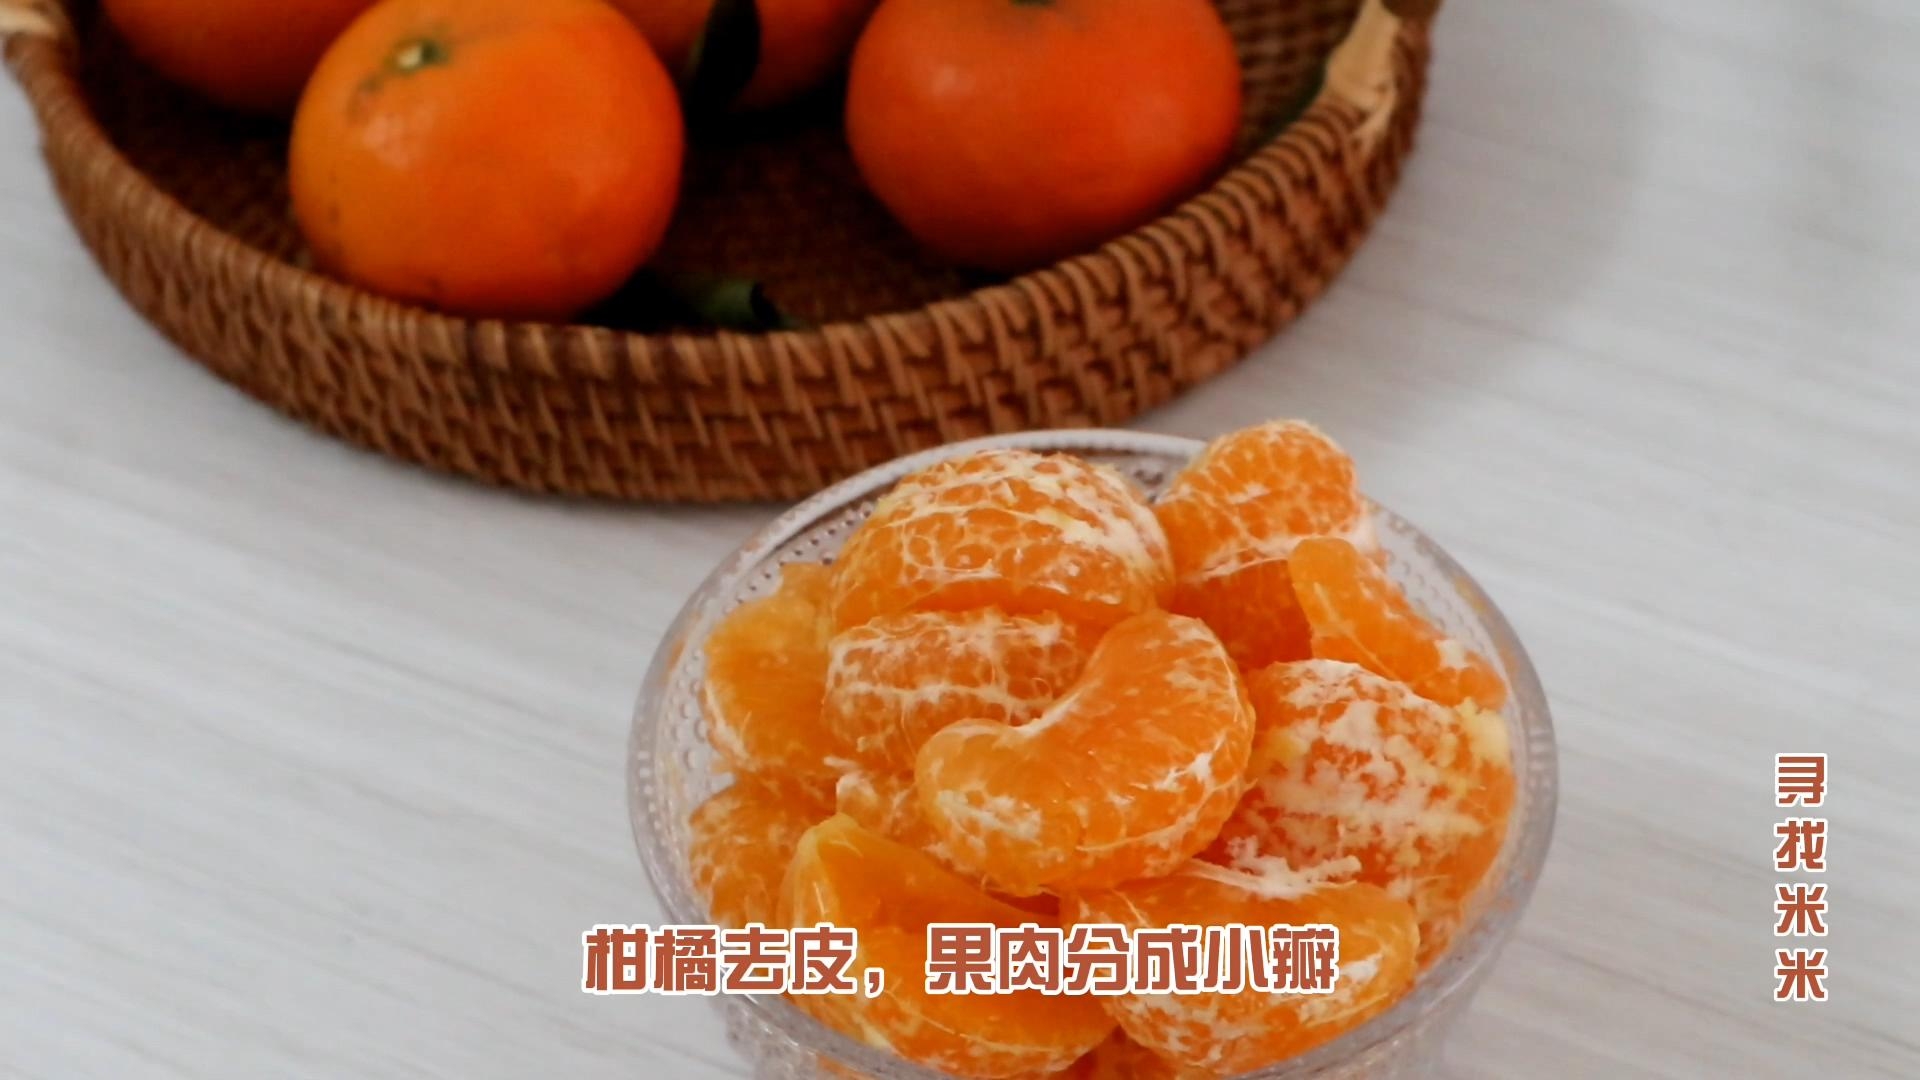 Citrus Sparkling Water recipe